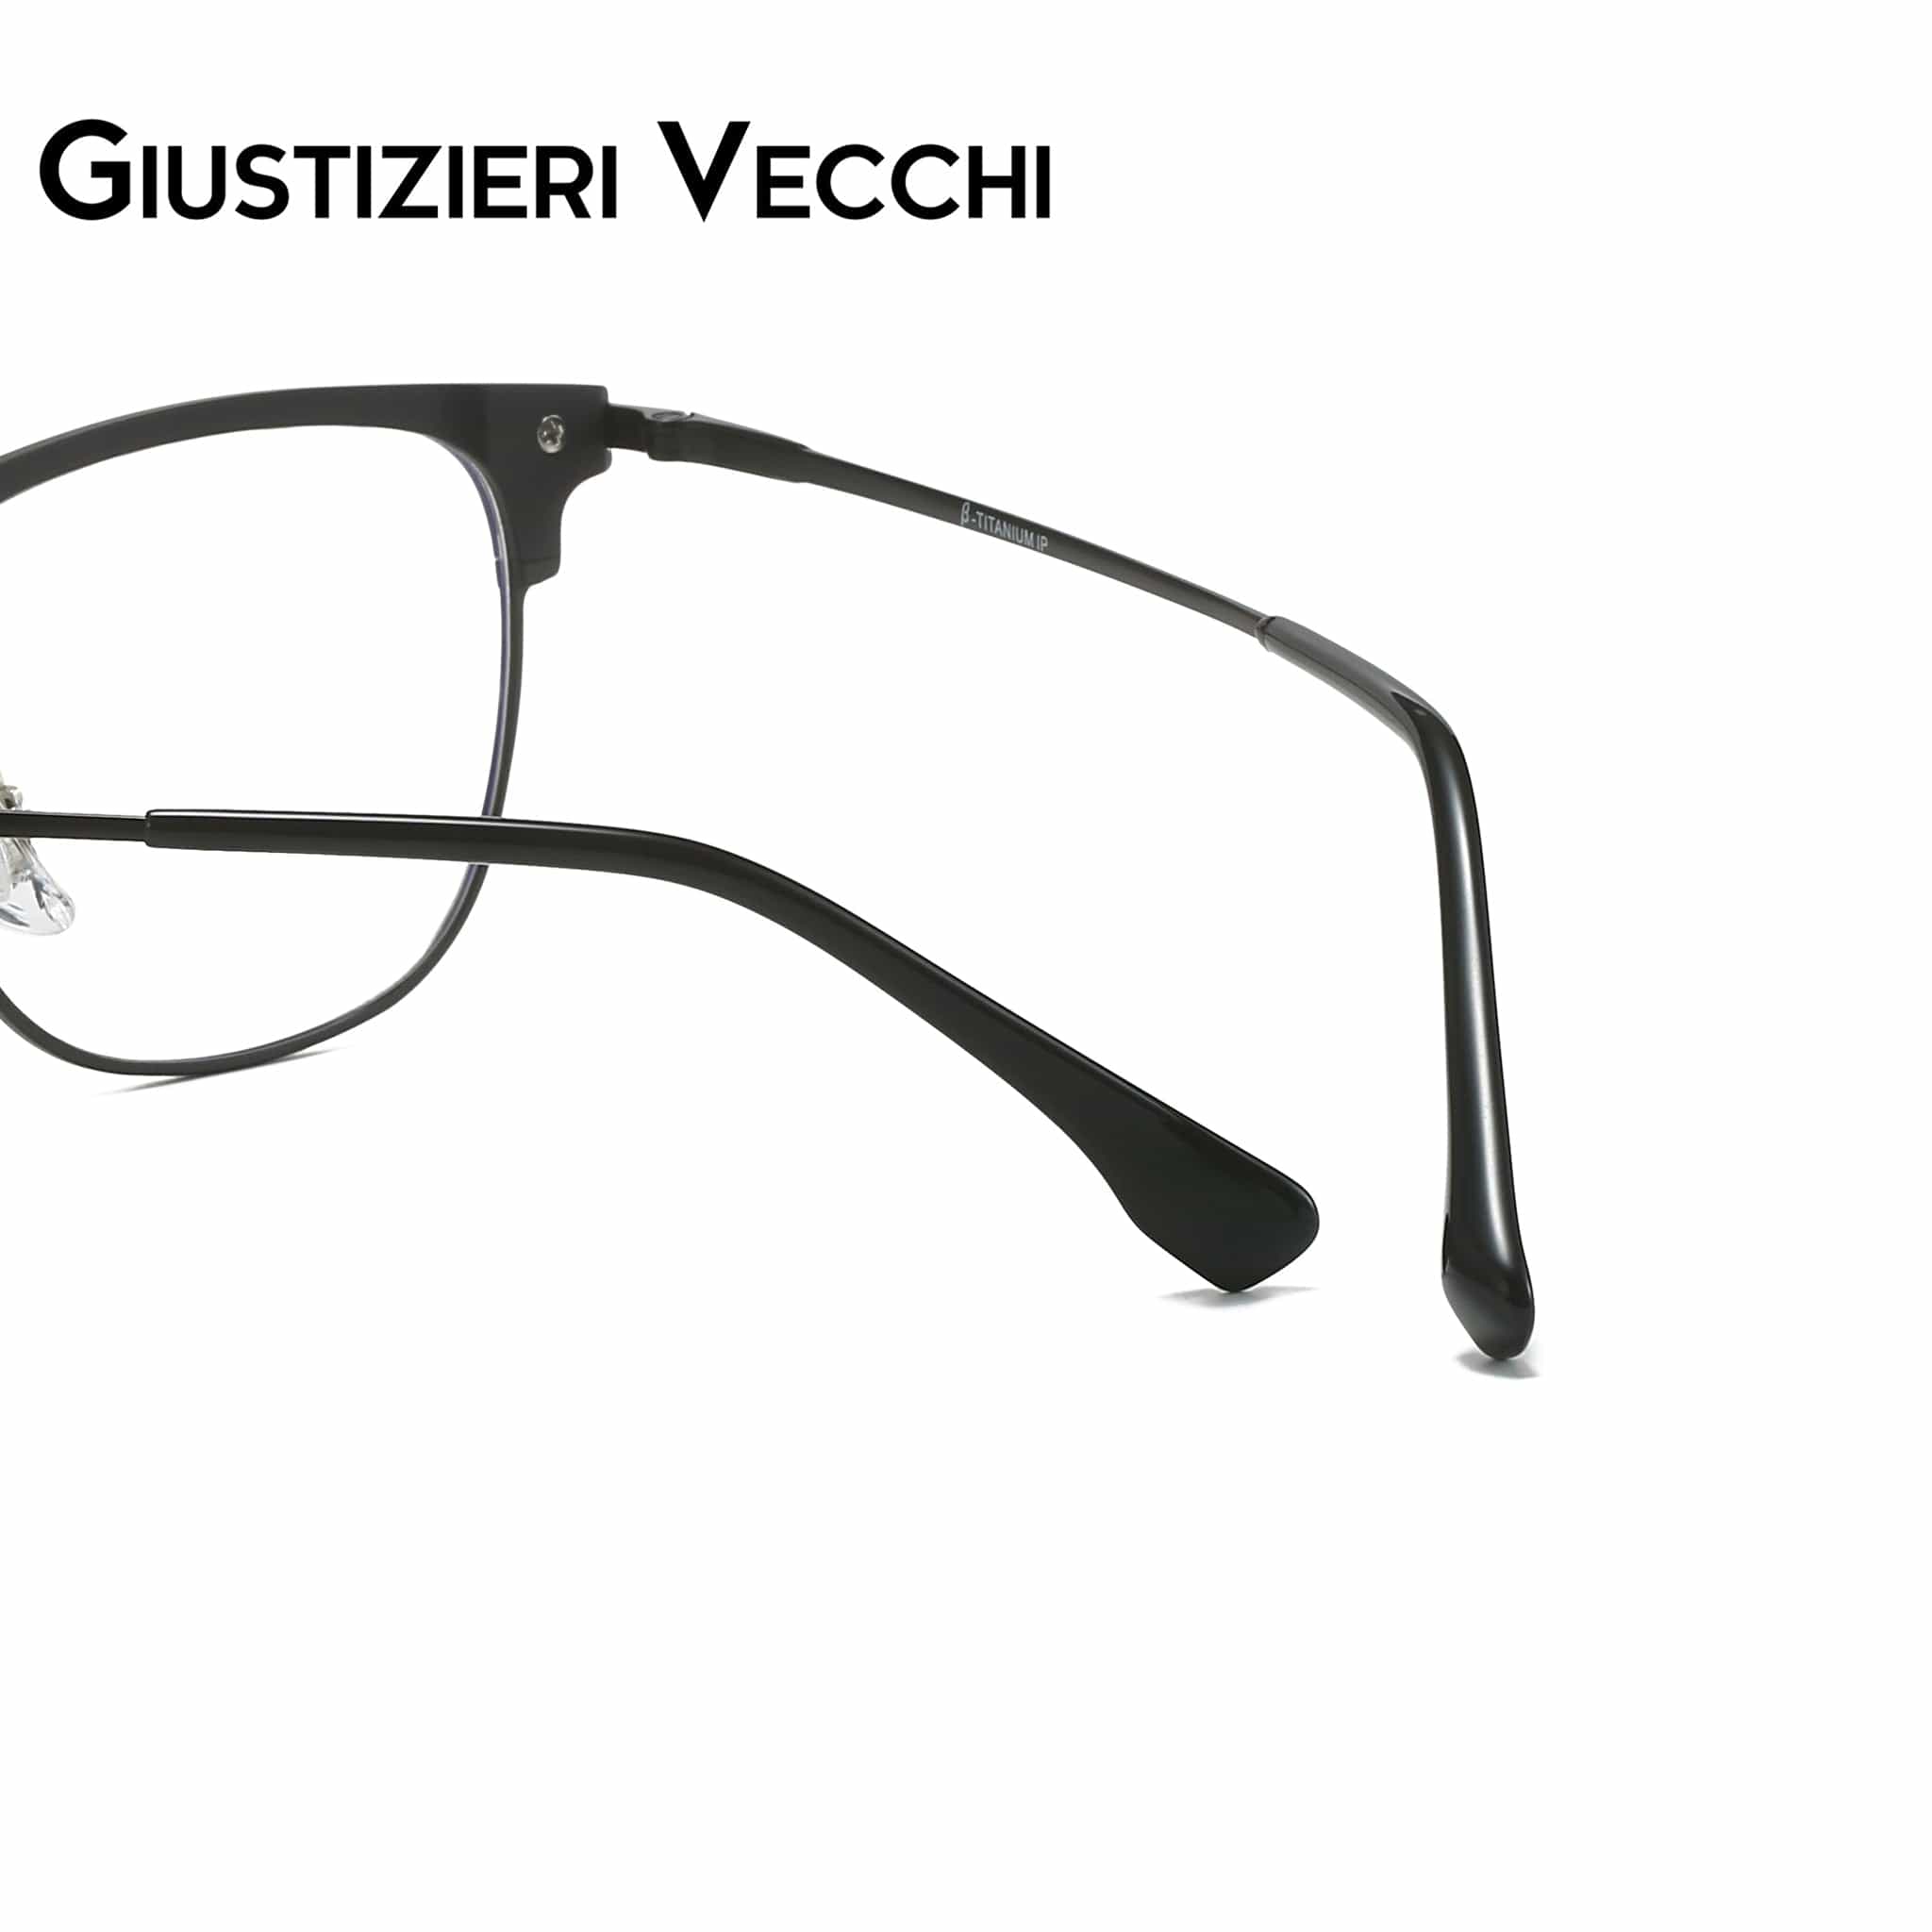 GIUSTIZIERI VECCHI Eyeglasses FireRush Uno